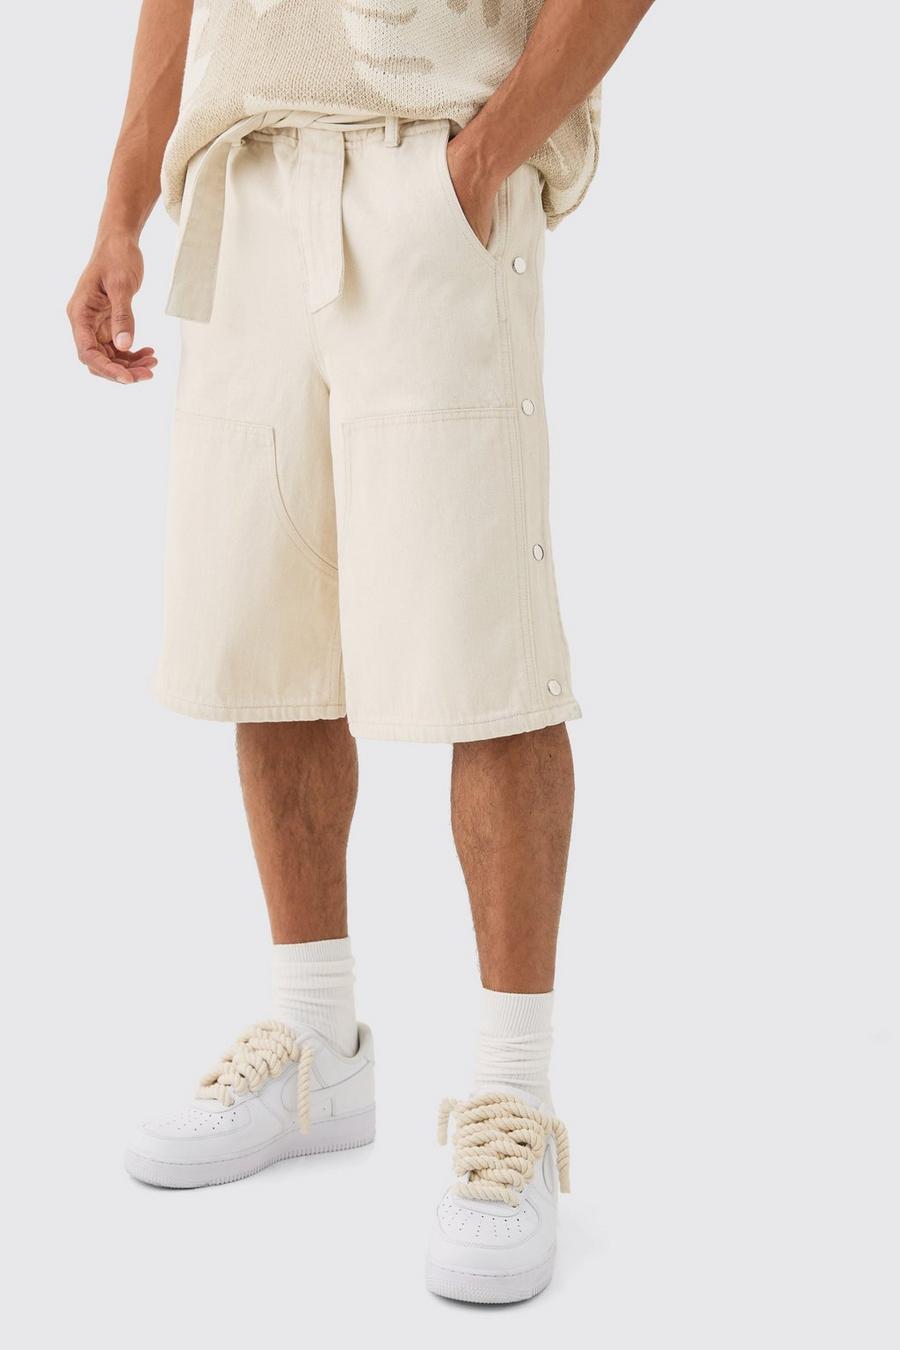 Pantaloni tuta in denim rilassati stile Carpenter con bottoni a pressione elasticizzati in vita in color ecru